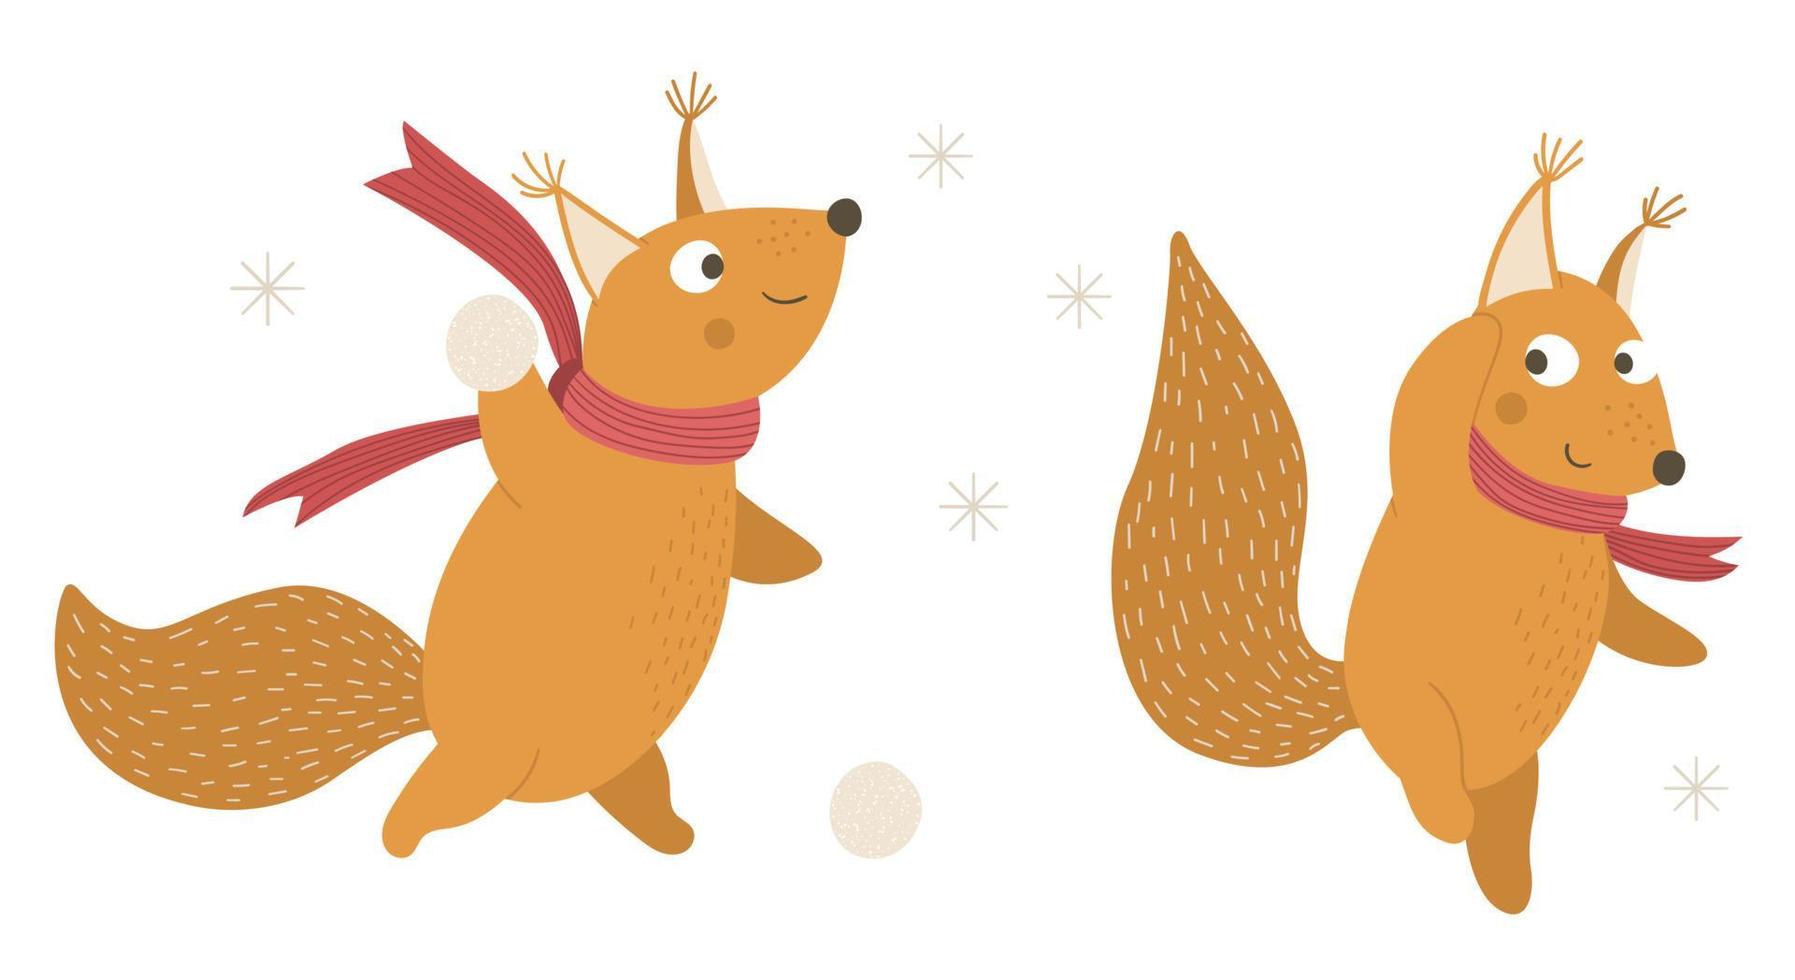 ilustração em vetor de esquilos em lenços jogando bolas de neve. animais fofos da floresta fazendo atividades de inverno. personagens engraçados da floresta.